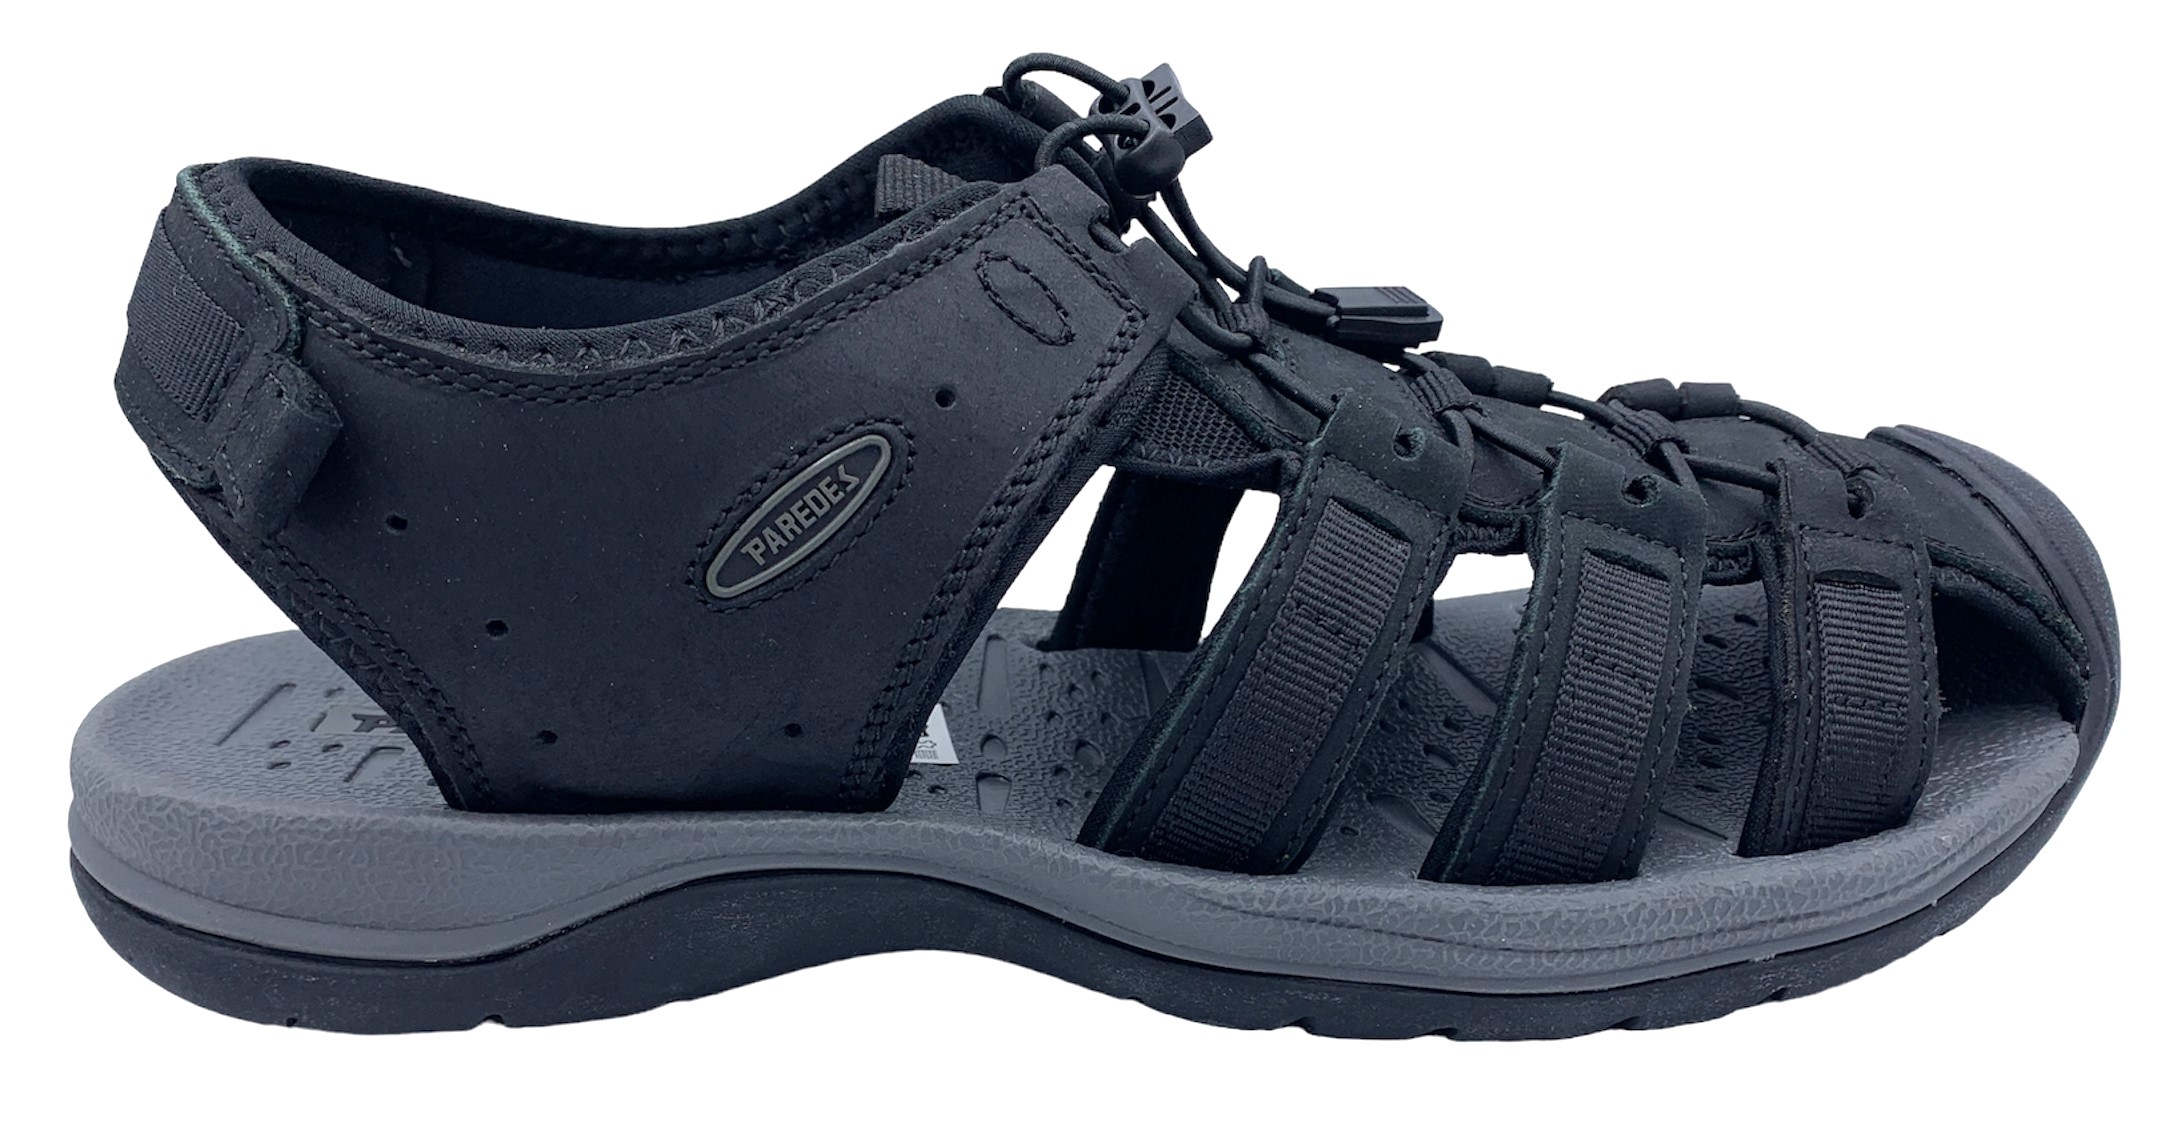 Pánské kožené sandále Misstic Paredes 22175 černé Velikost: 43 (EU)